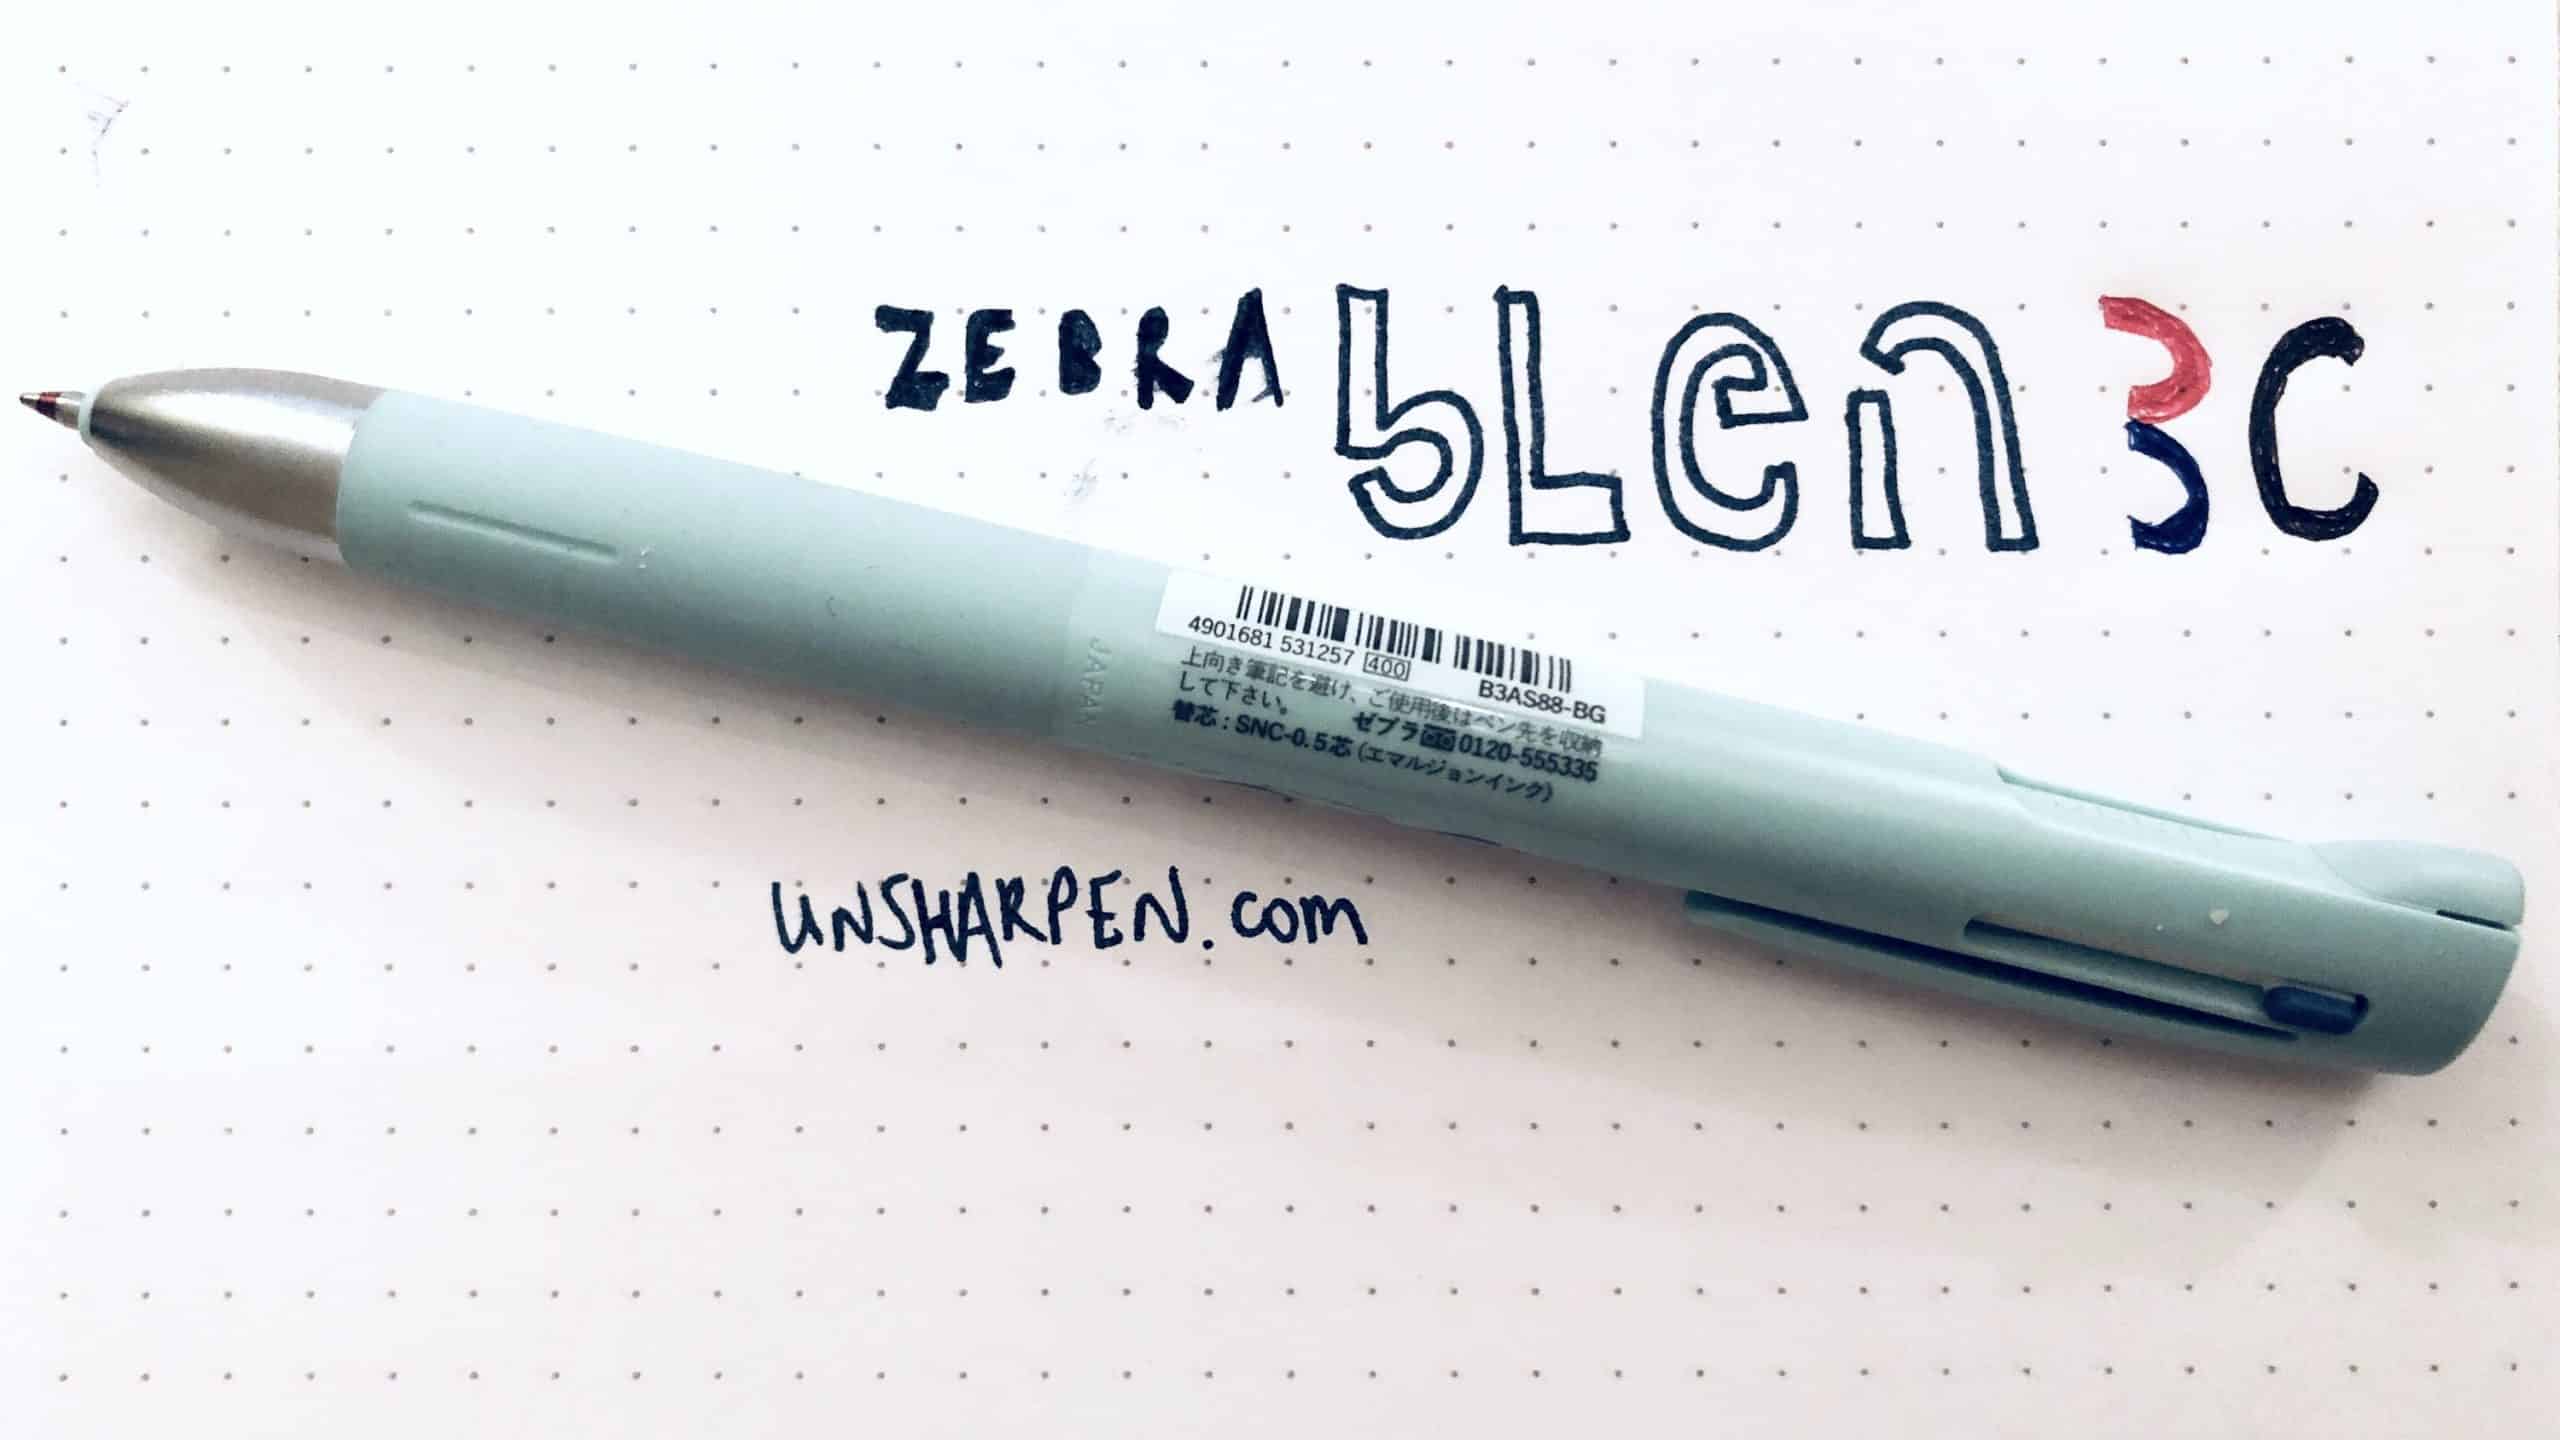 Zebra Blen 3C Multi-pen